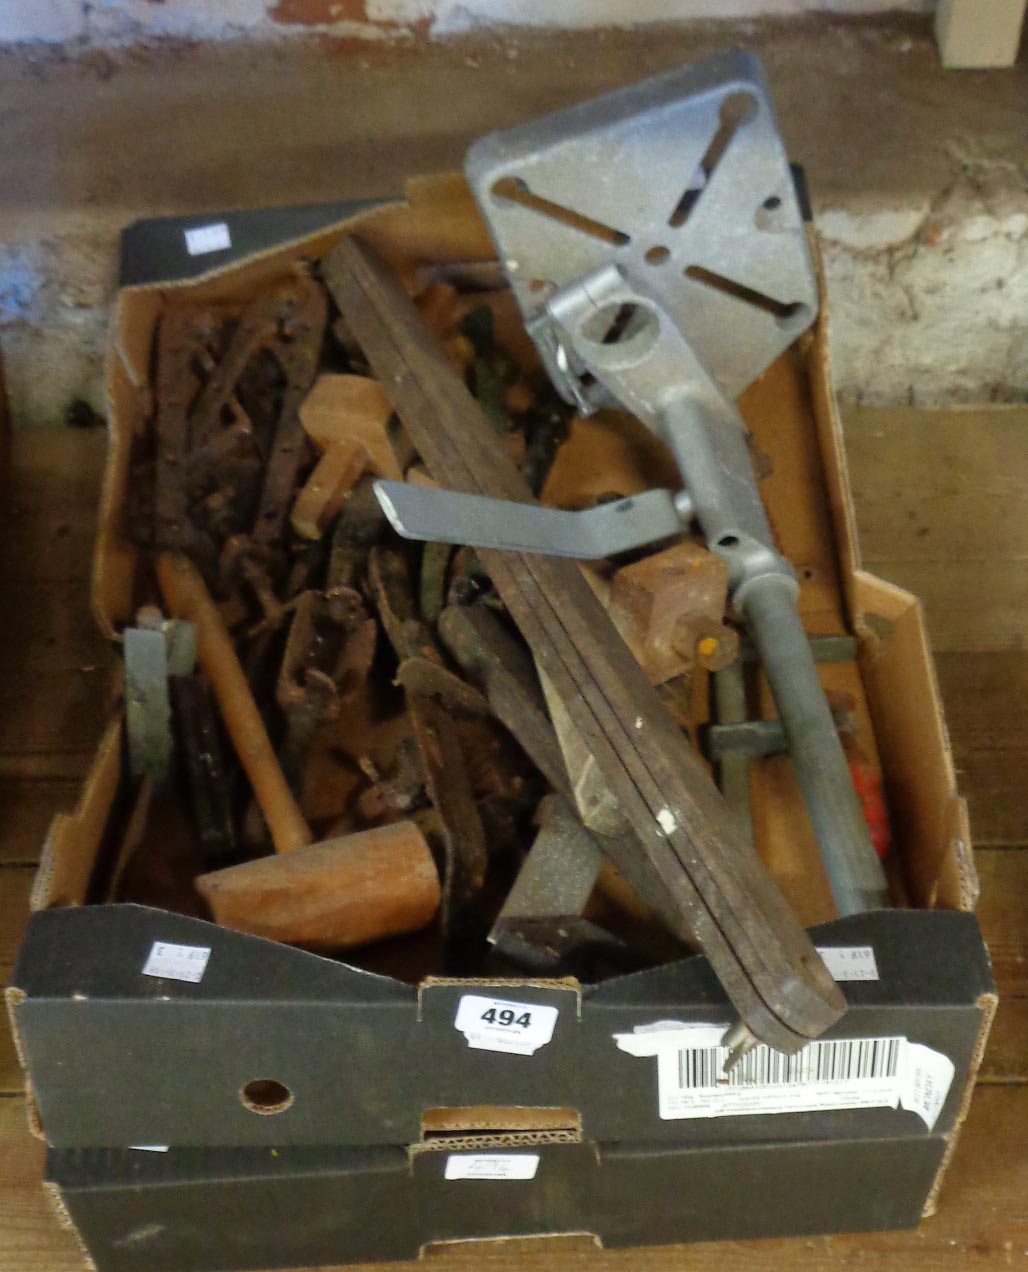 A quantity of vintage carpenter's tools including spirit levels, bradawls, set squares,